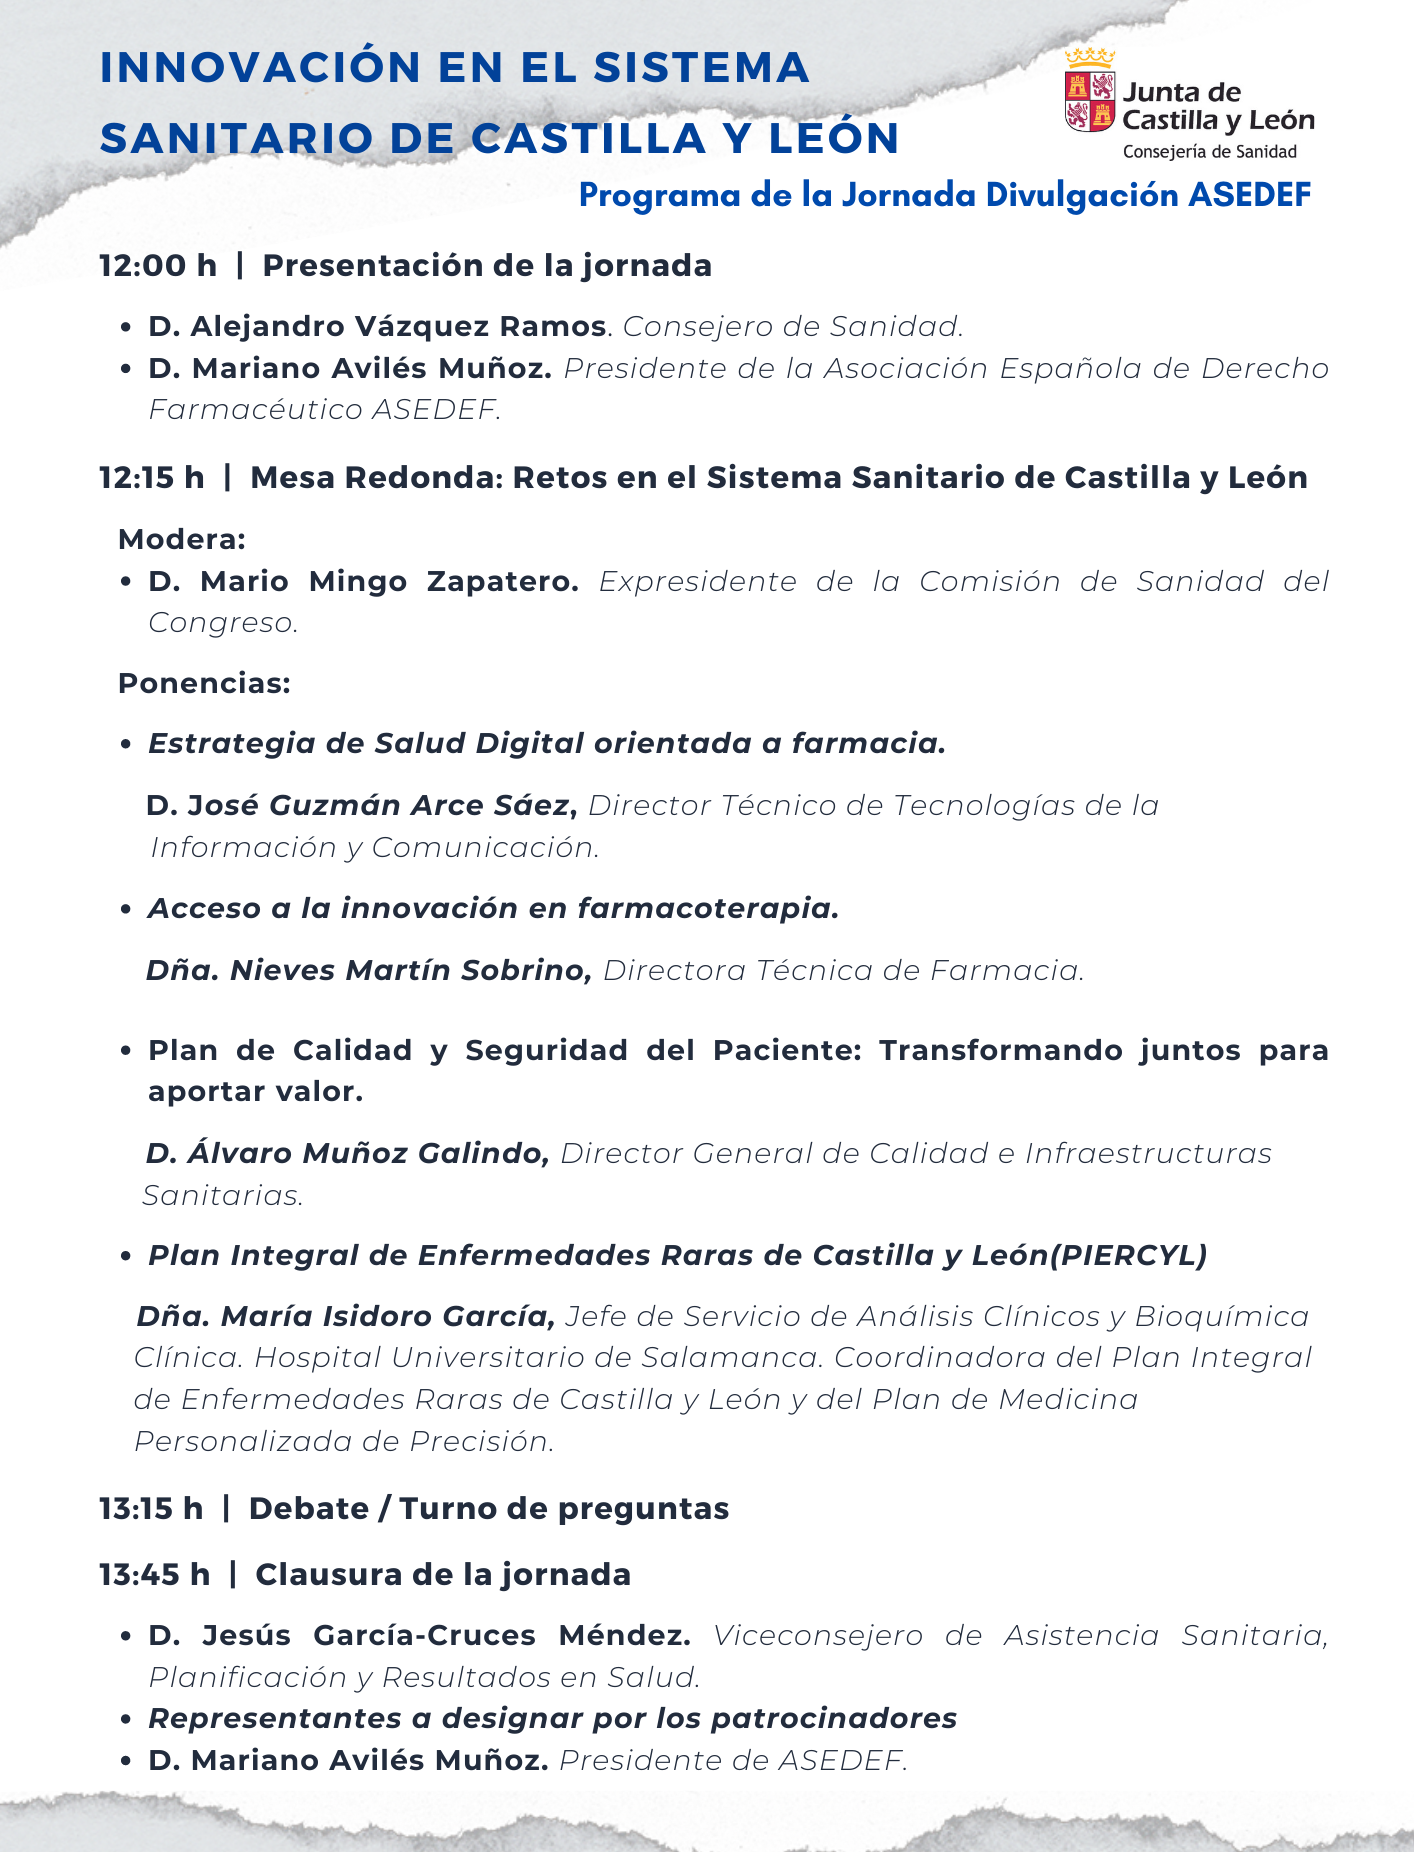 Agenda Innovación en el Sistema Sanitario de Castilla y León 4-7-2023